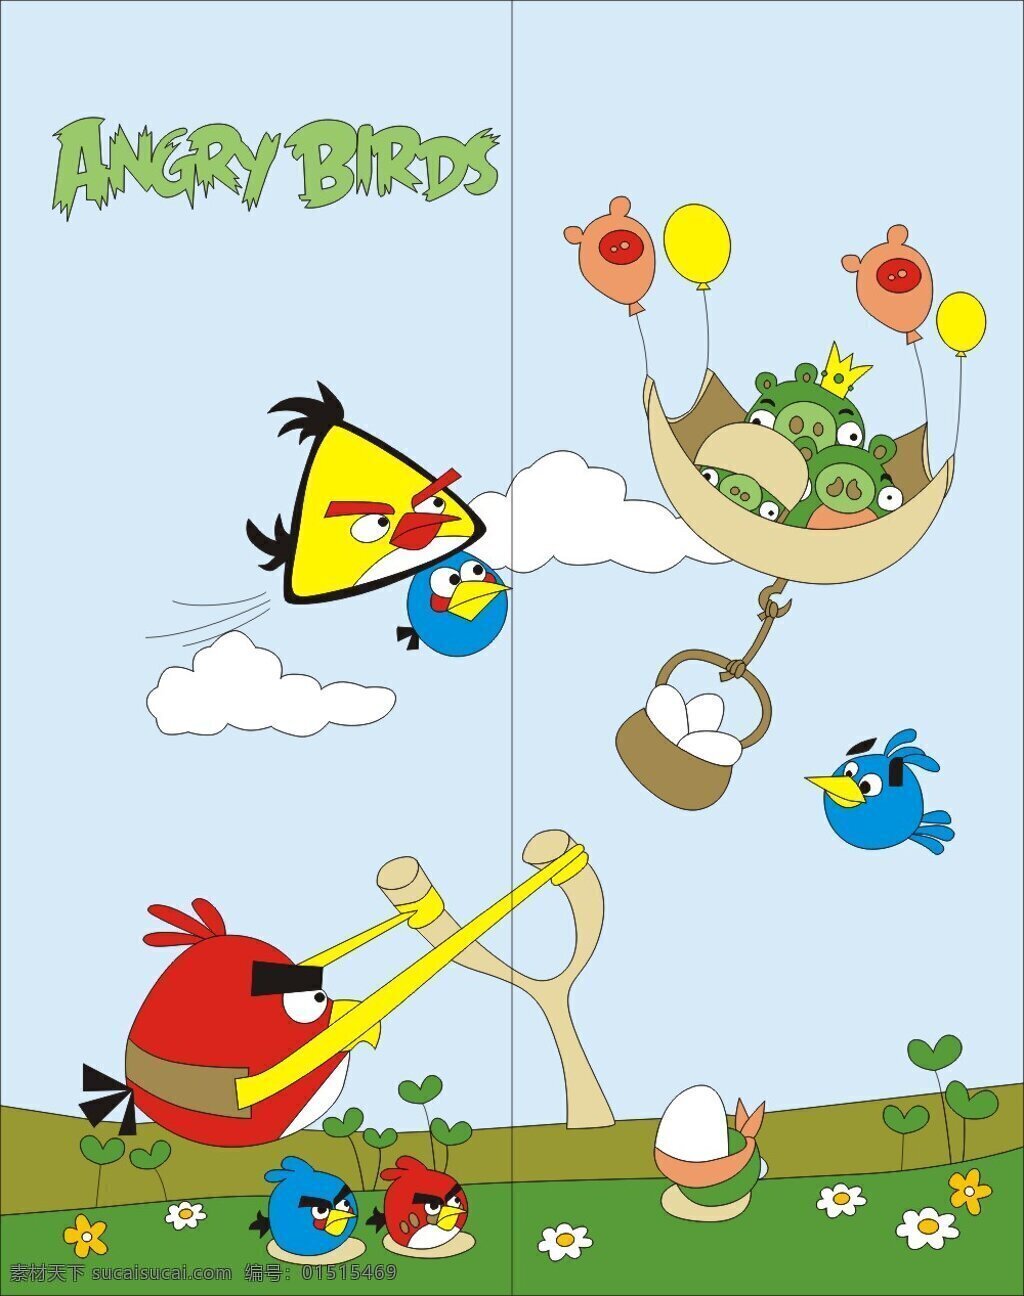 愤怒的小鸟 弹弓 气球 弹射 游乐园 弹鸟 angry birds 皇冠猪 三只猪头 卡通设计